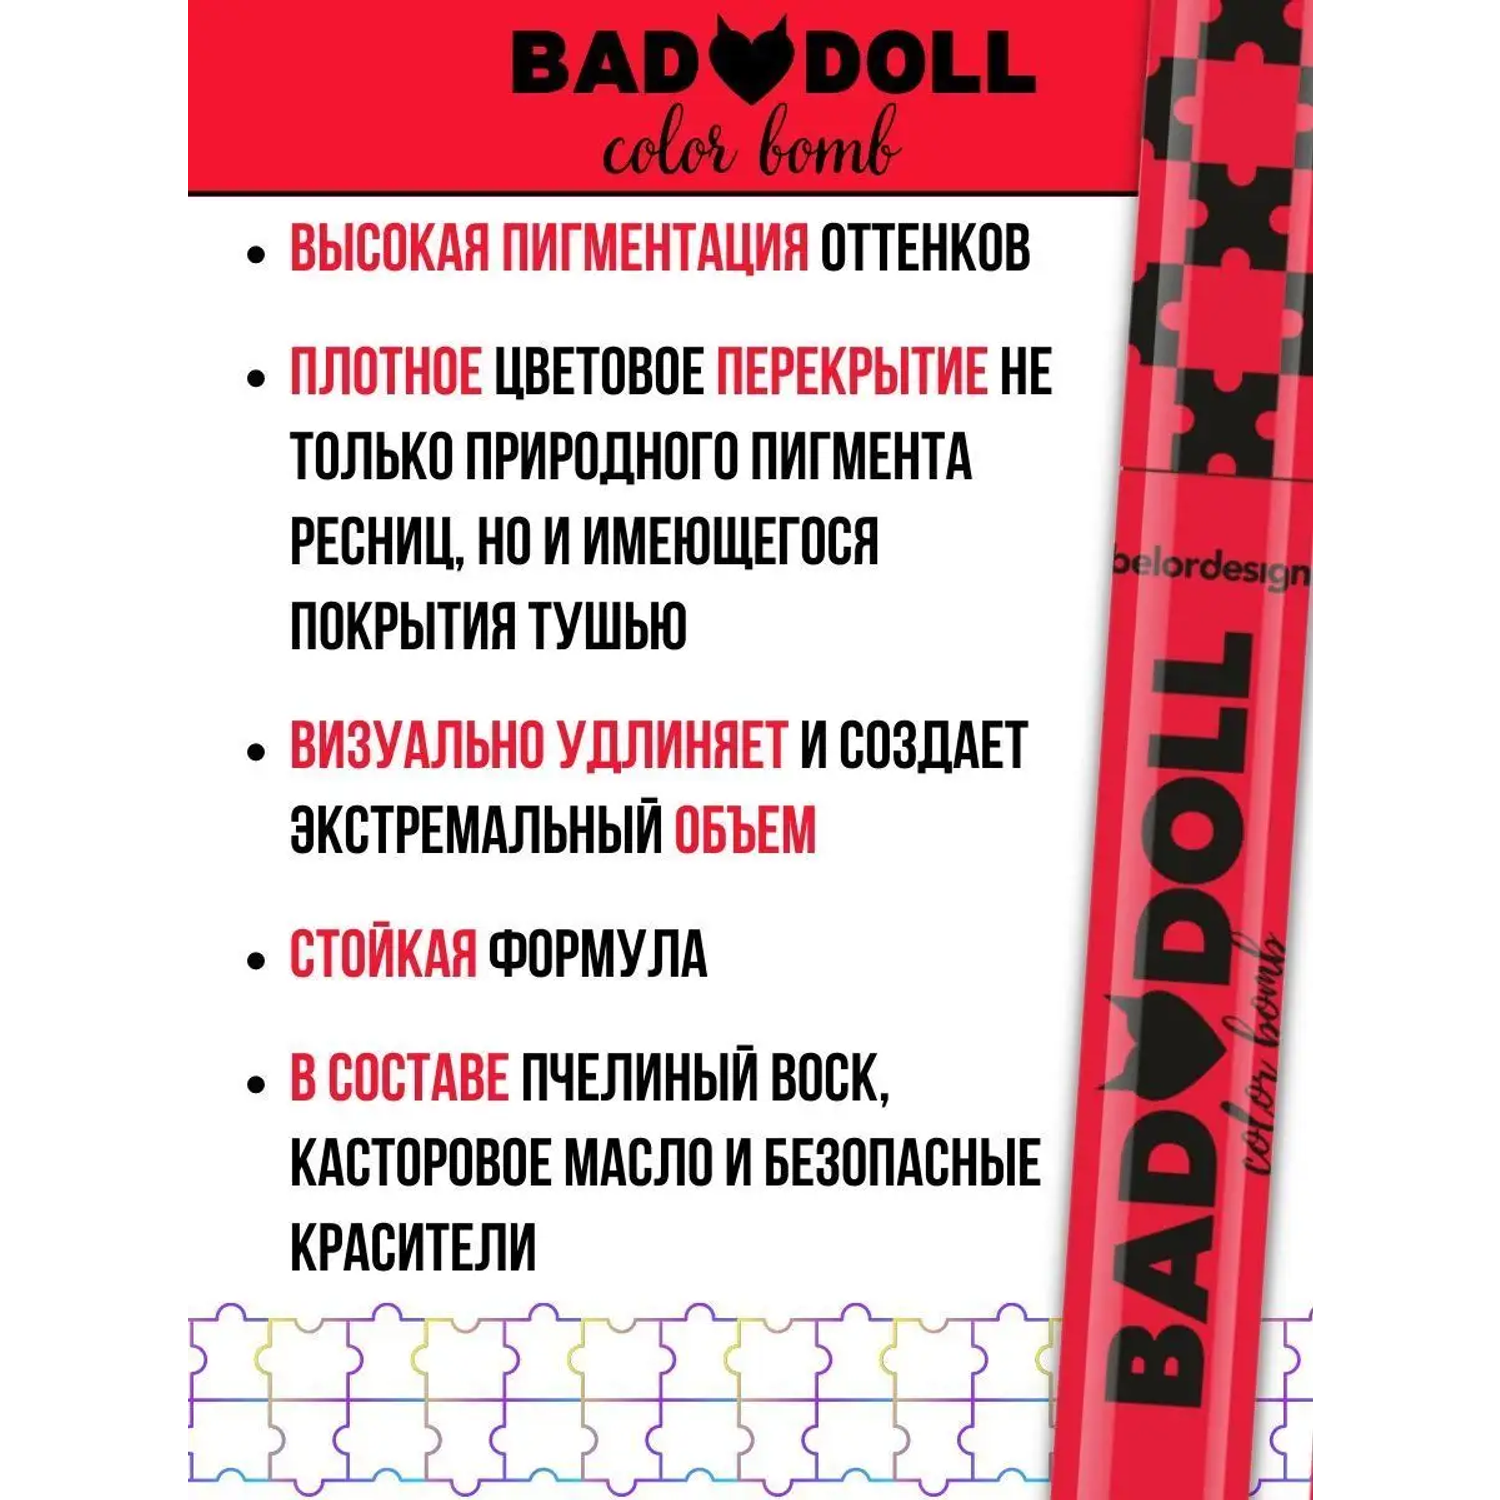 Тушь для ресниц цветная Belor Design Bad Doll объемная красная - фото 4